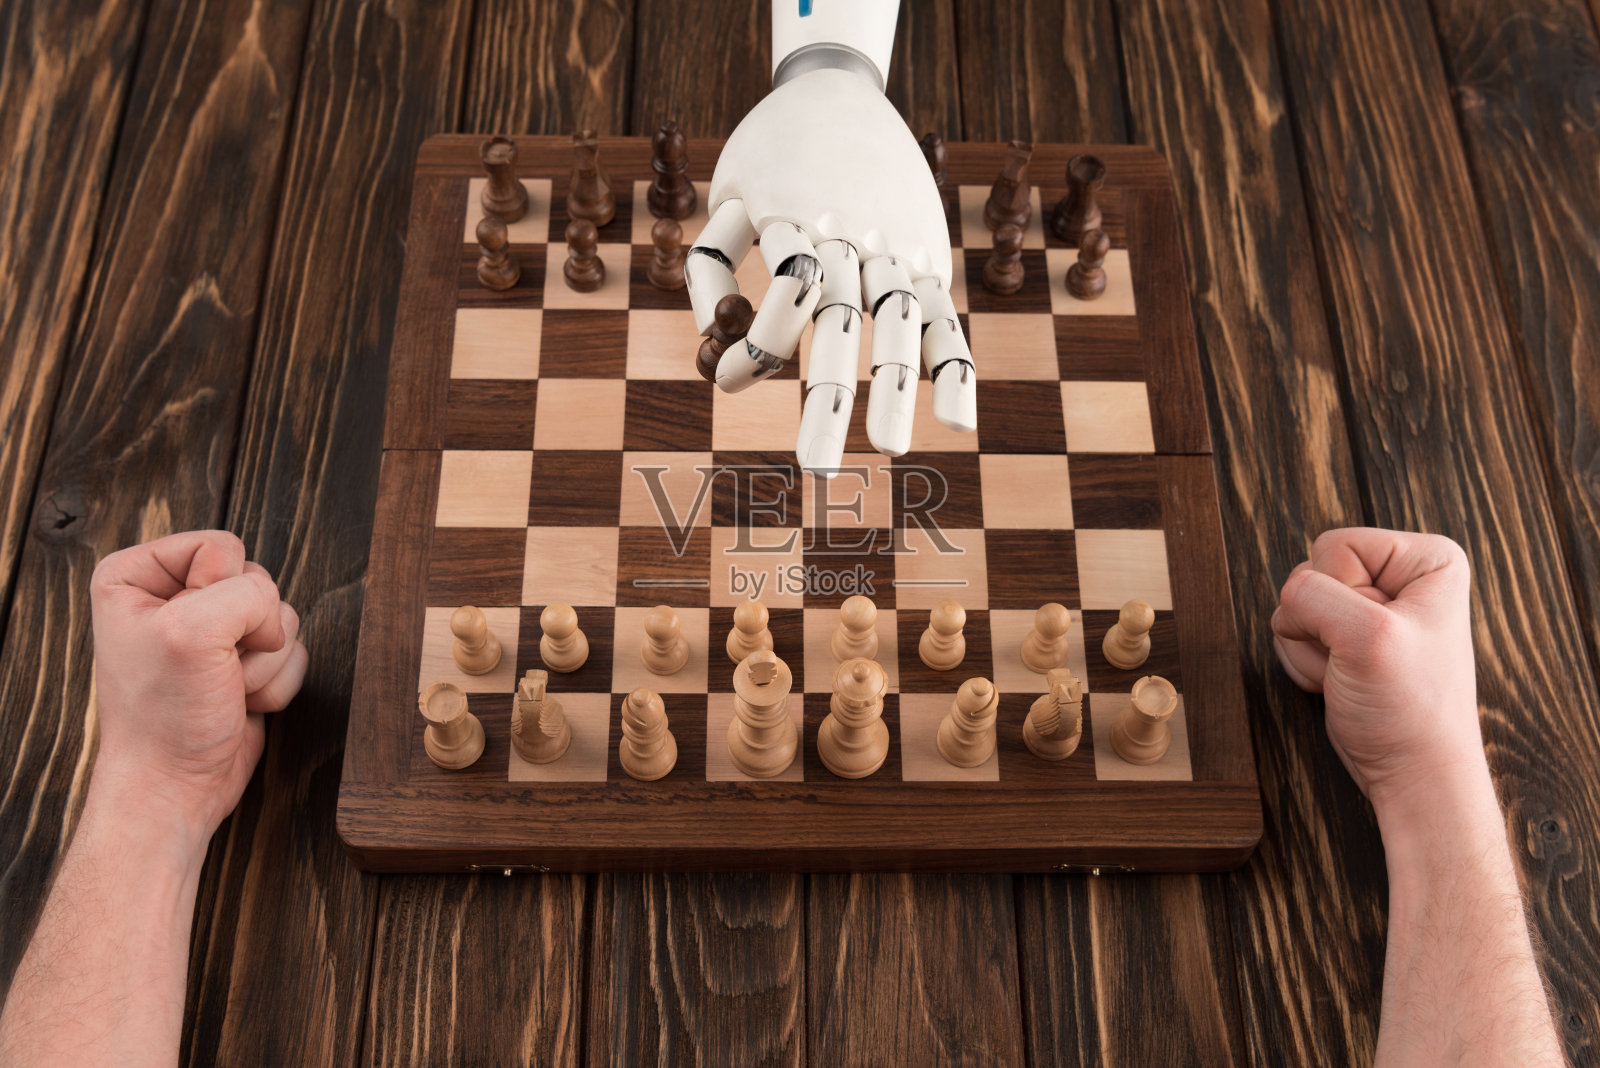 机器人与人类在木制桌面上下棋的镜头照片摄影图片